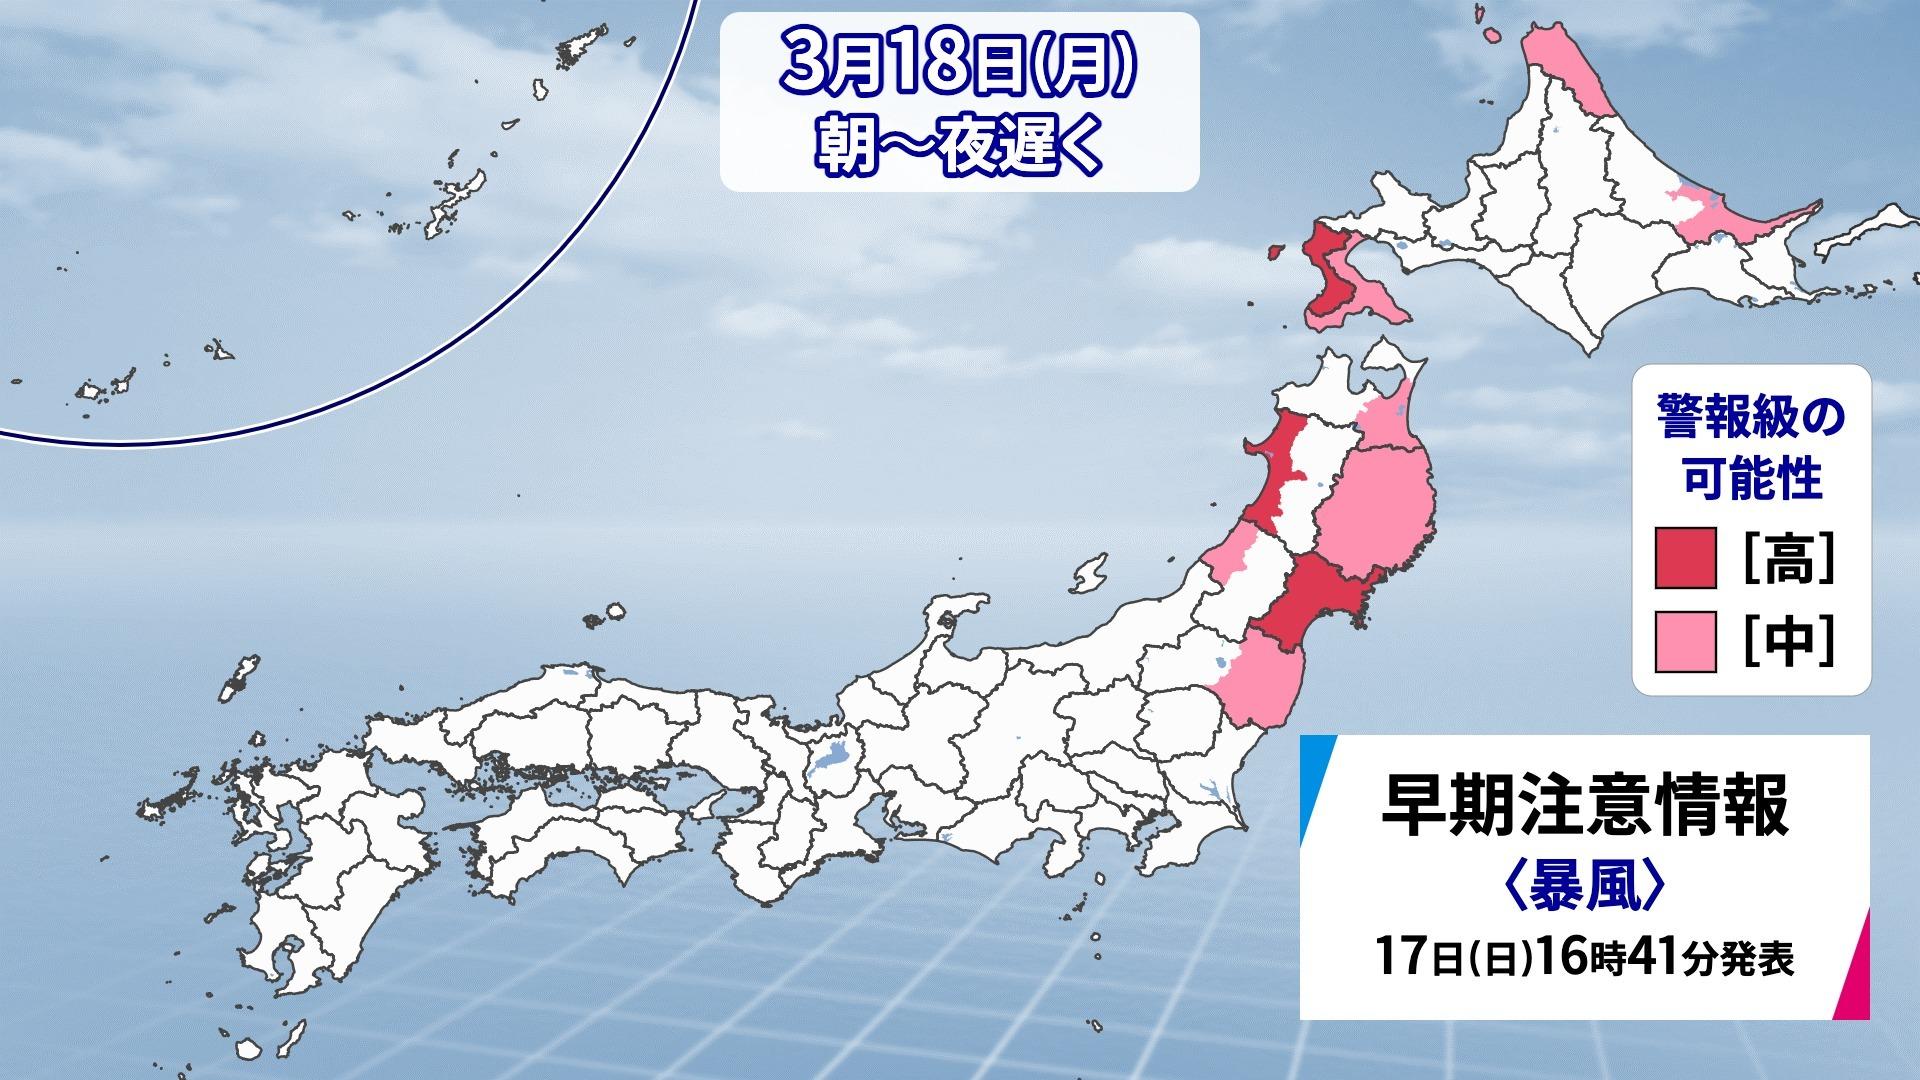 【18日(月)の天気】北日本は猛ふぶきに警戒 各地で気温急降下 真冬 